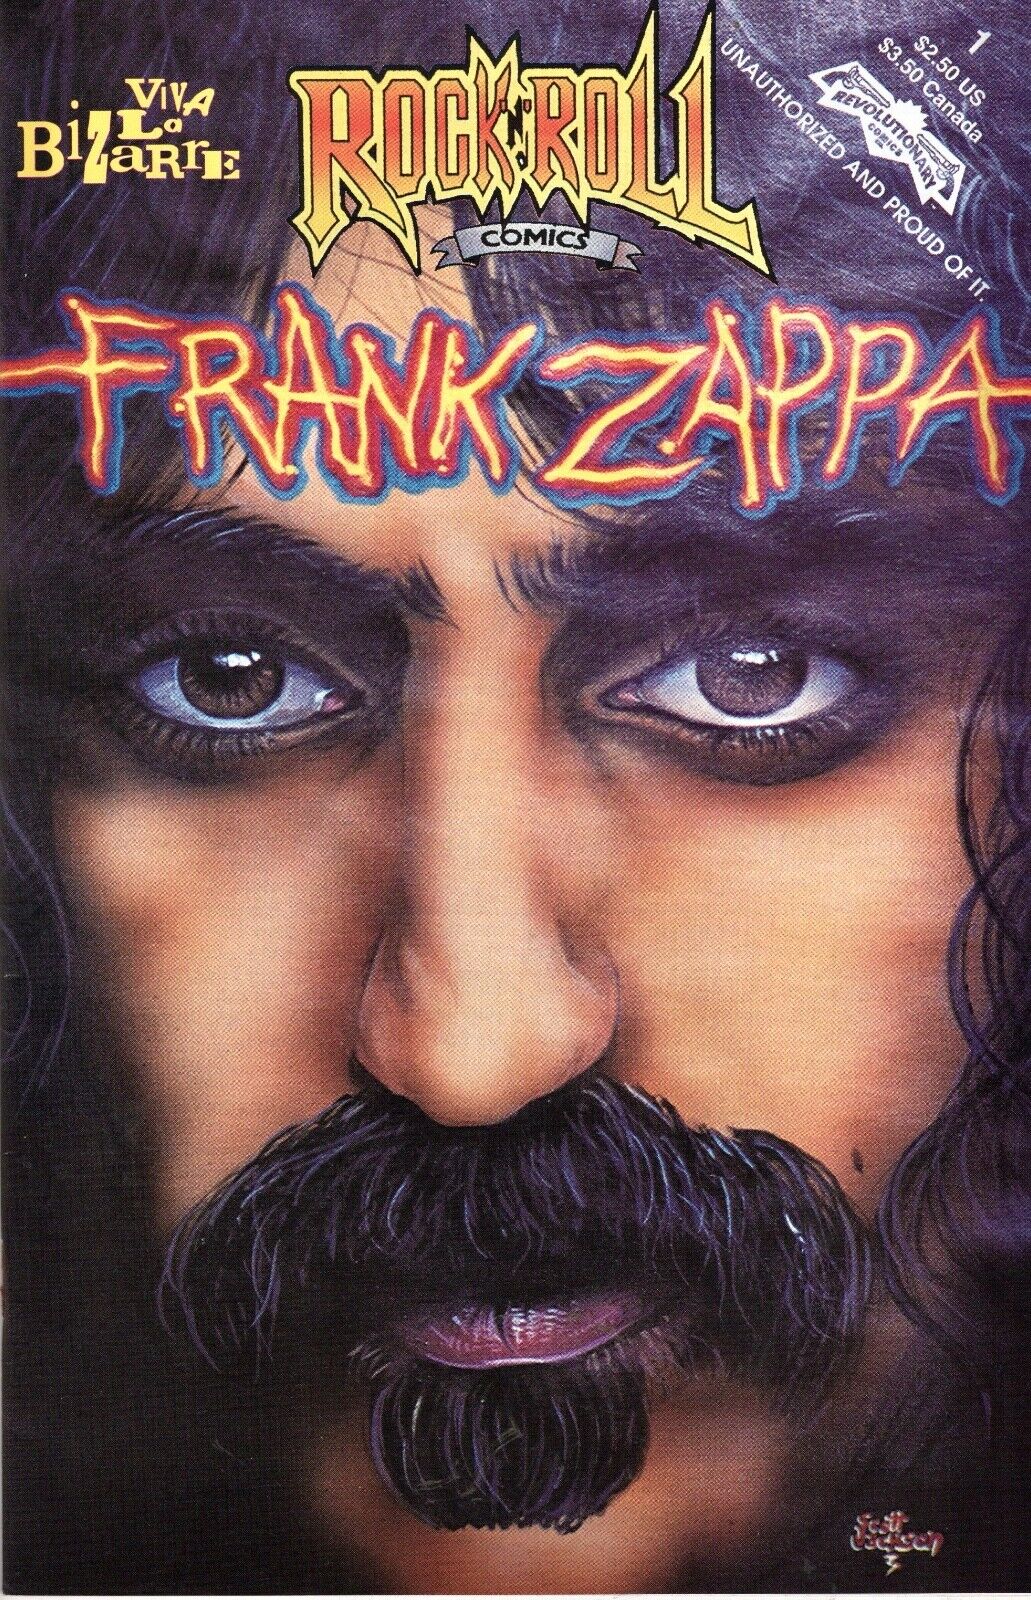 1991 Frank Zappa #1 Rock & Roll Revolutionary Comics Viva La Bizare M/NM